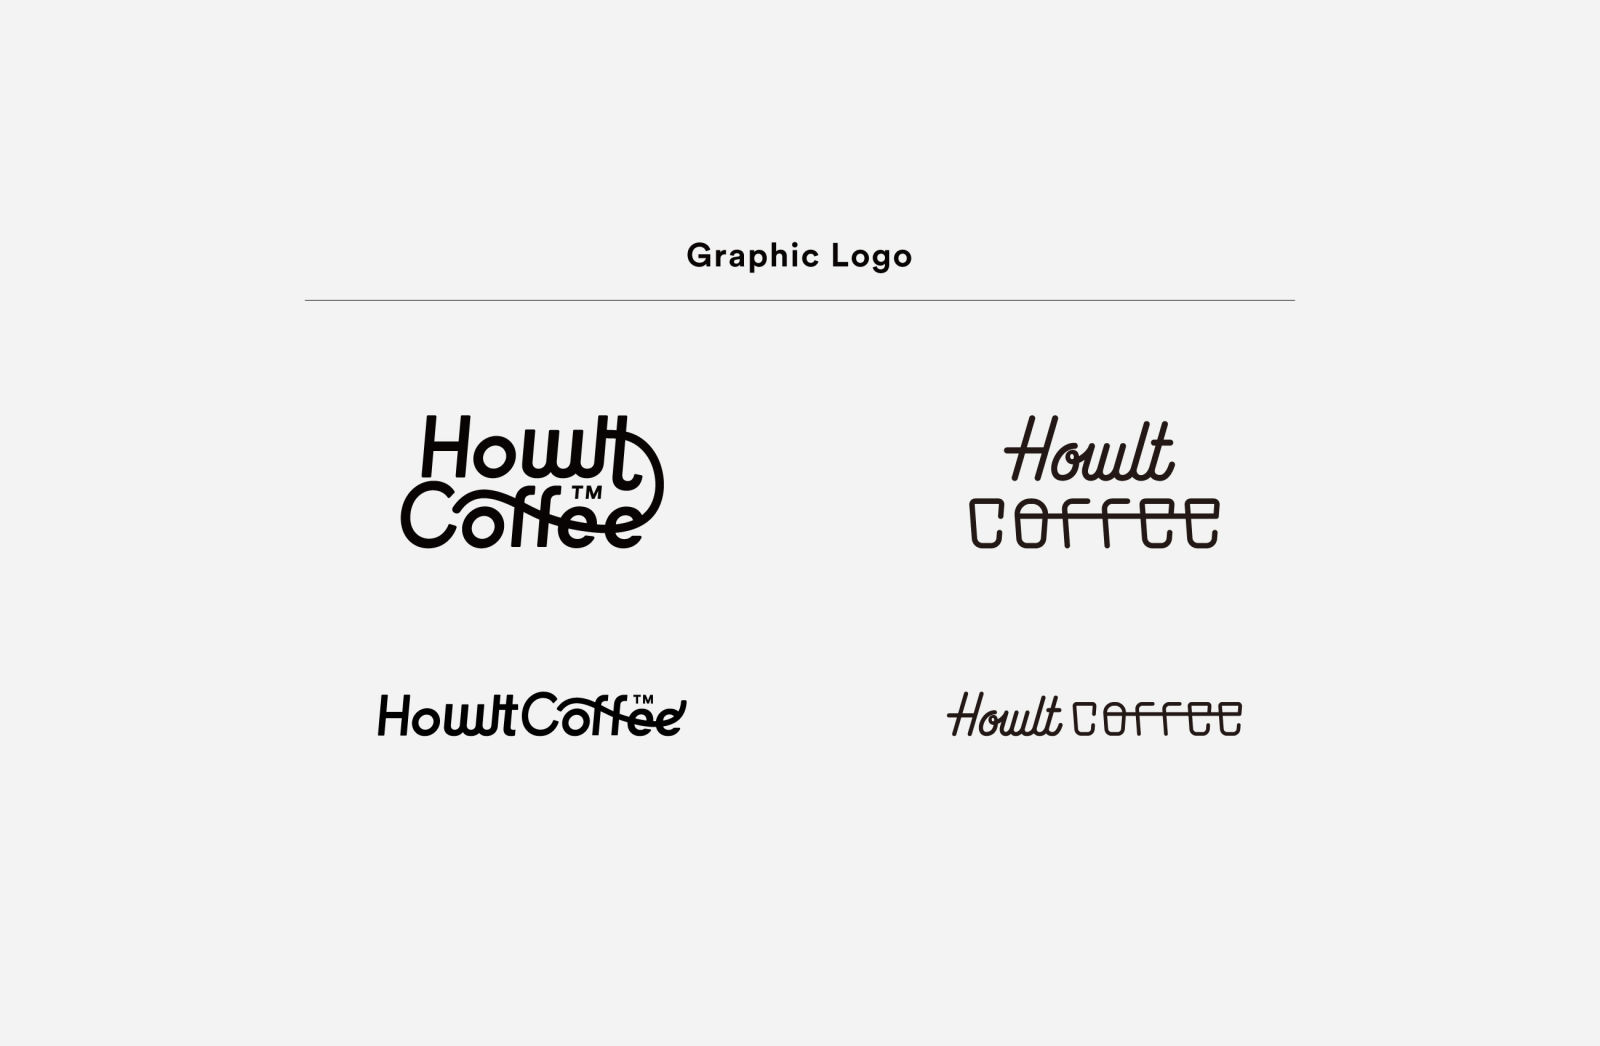 ホルトコーヒーのグラフィカルなロゴとタイプフェイス